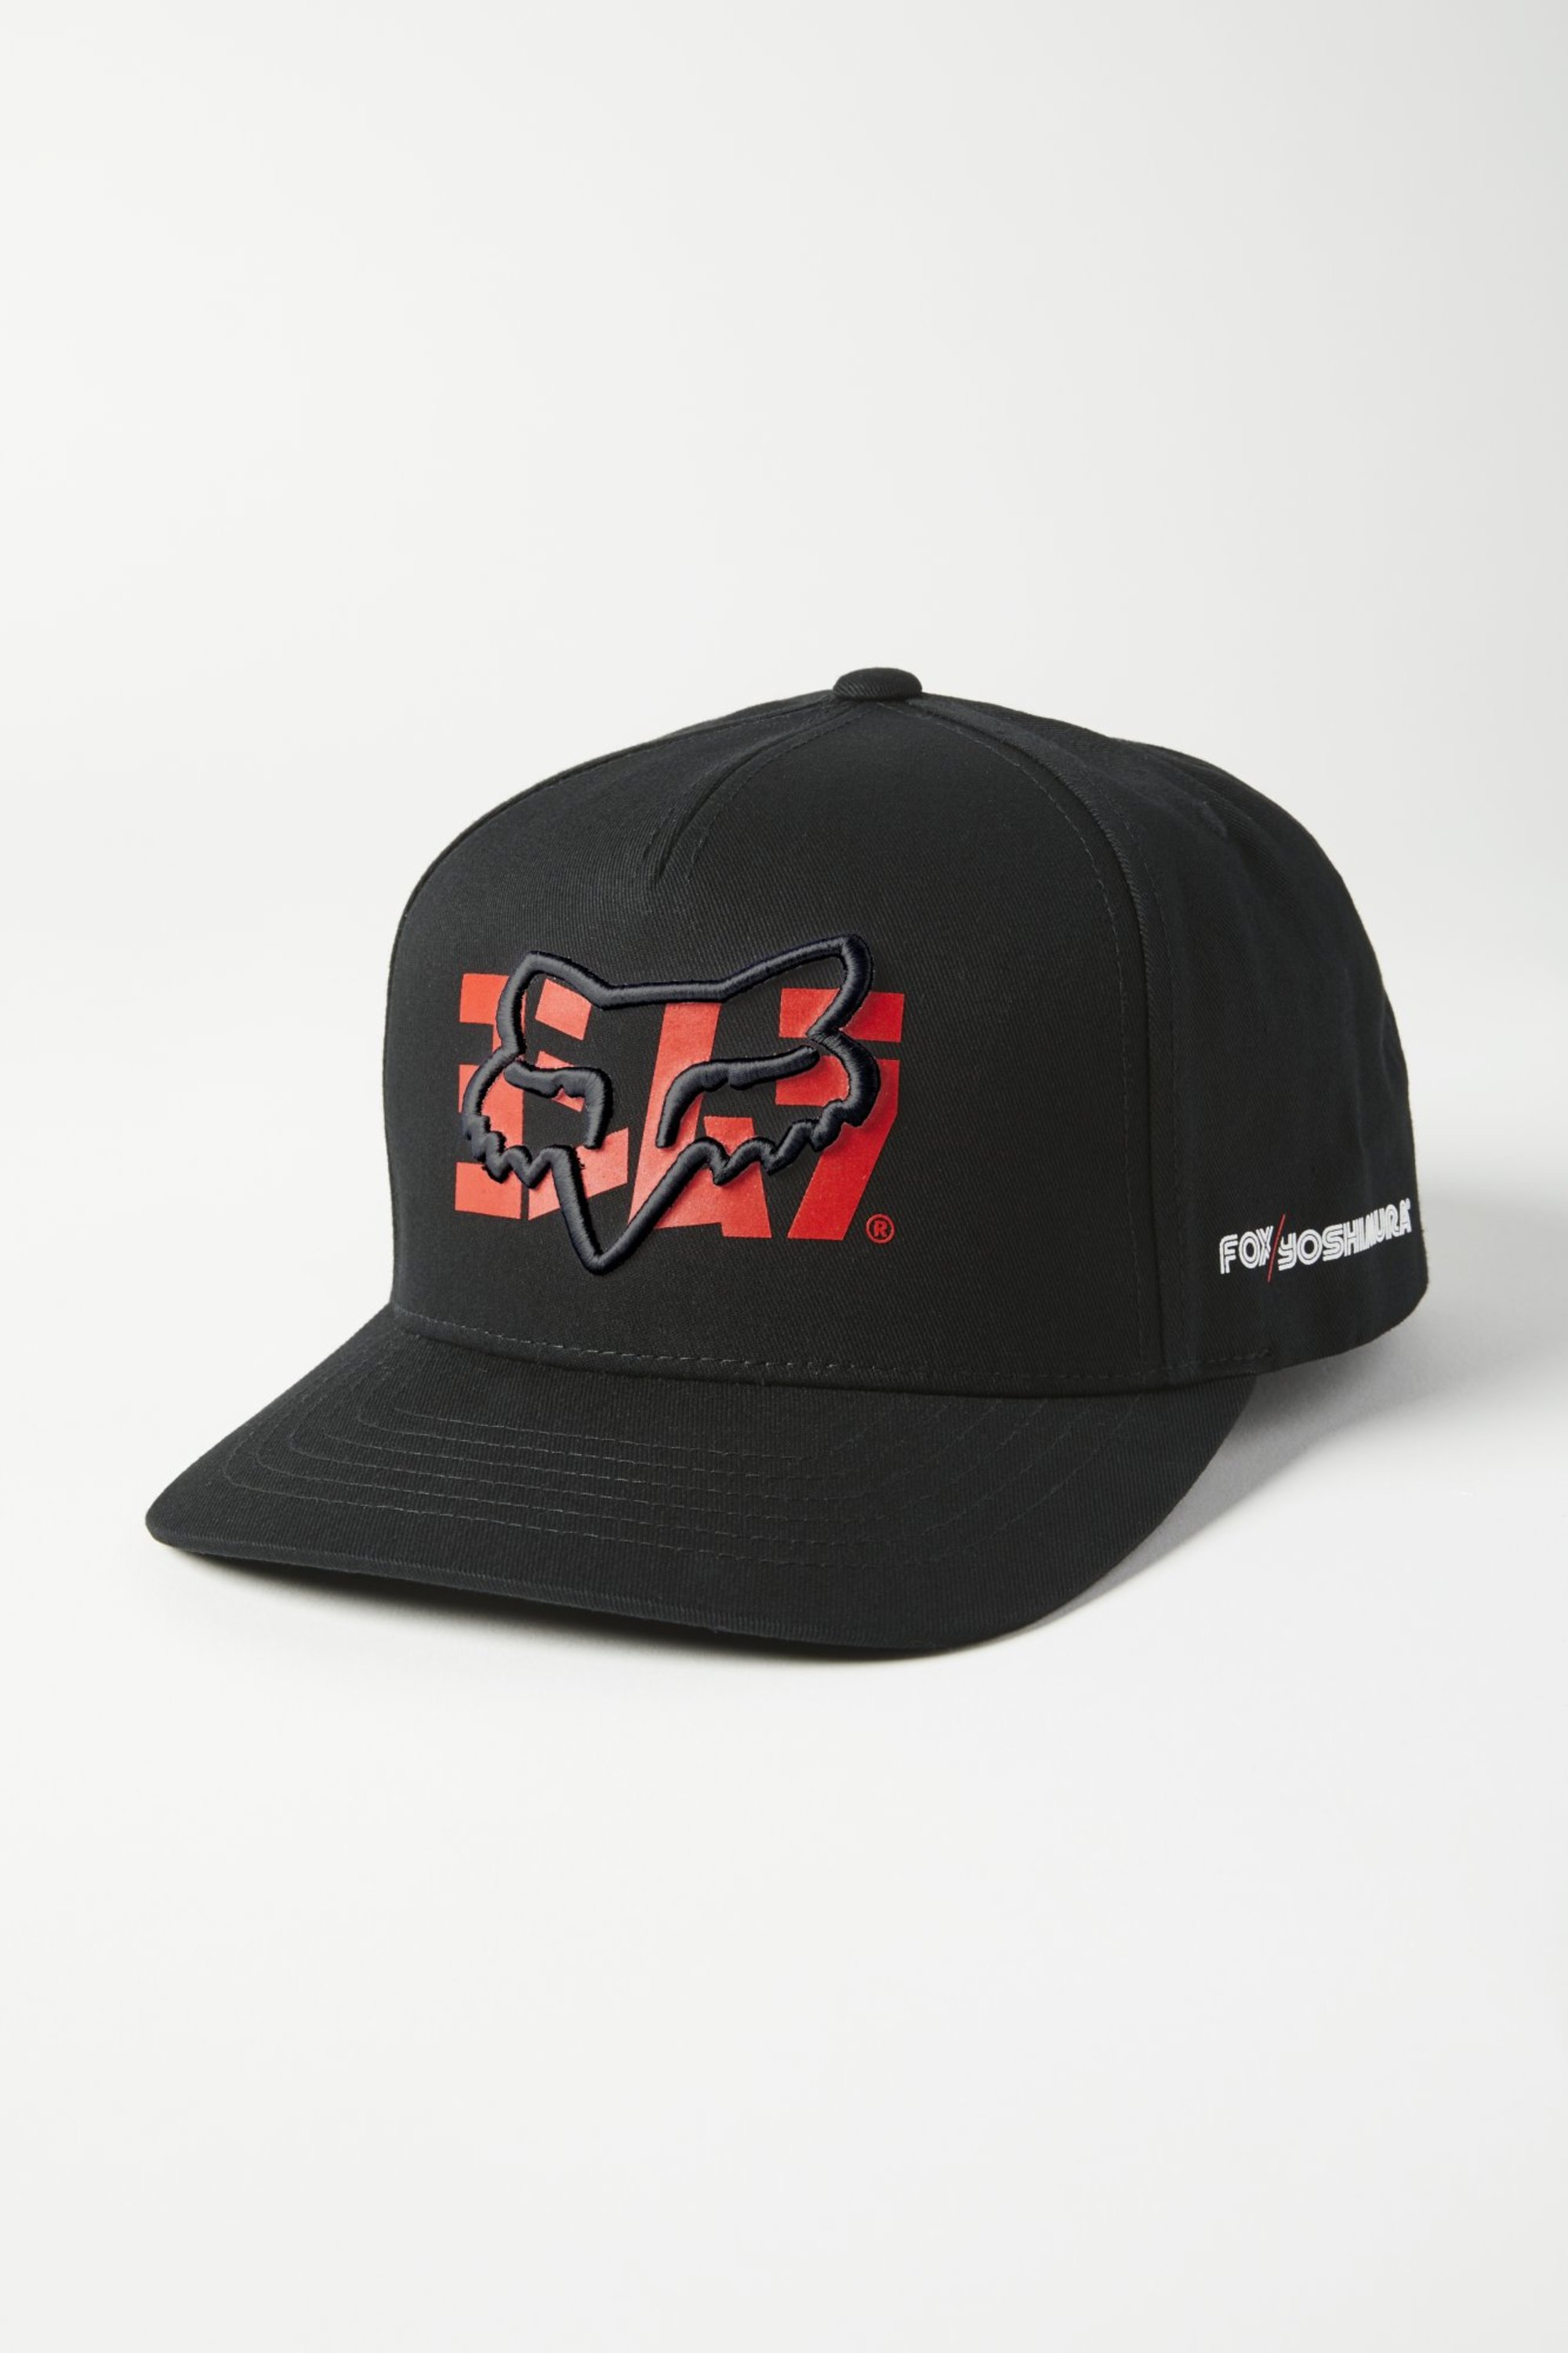 fox racing snapback hats for men yoshimura